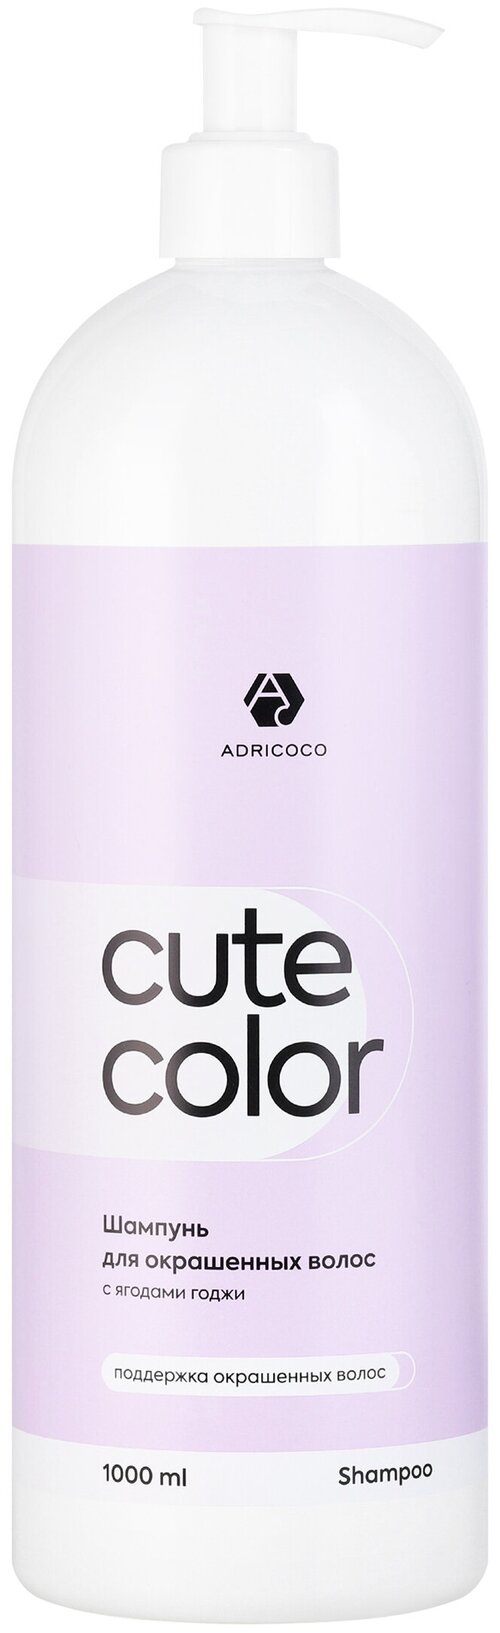 Adricoco, CUTE COLOR - шампунь для окрашенных волос с ягодами годжи, 1000 мл